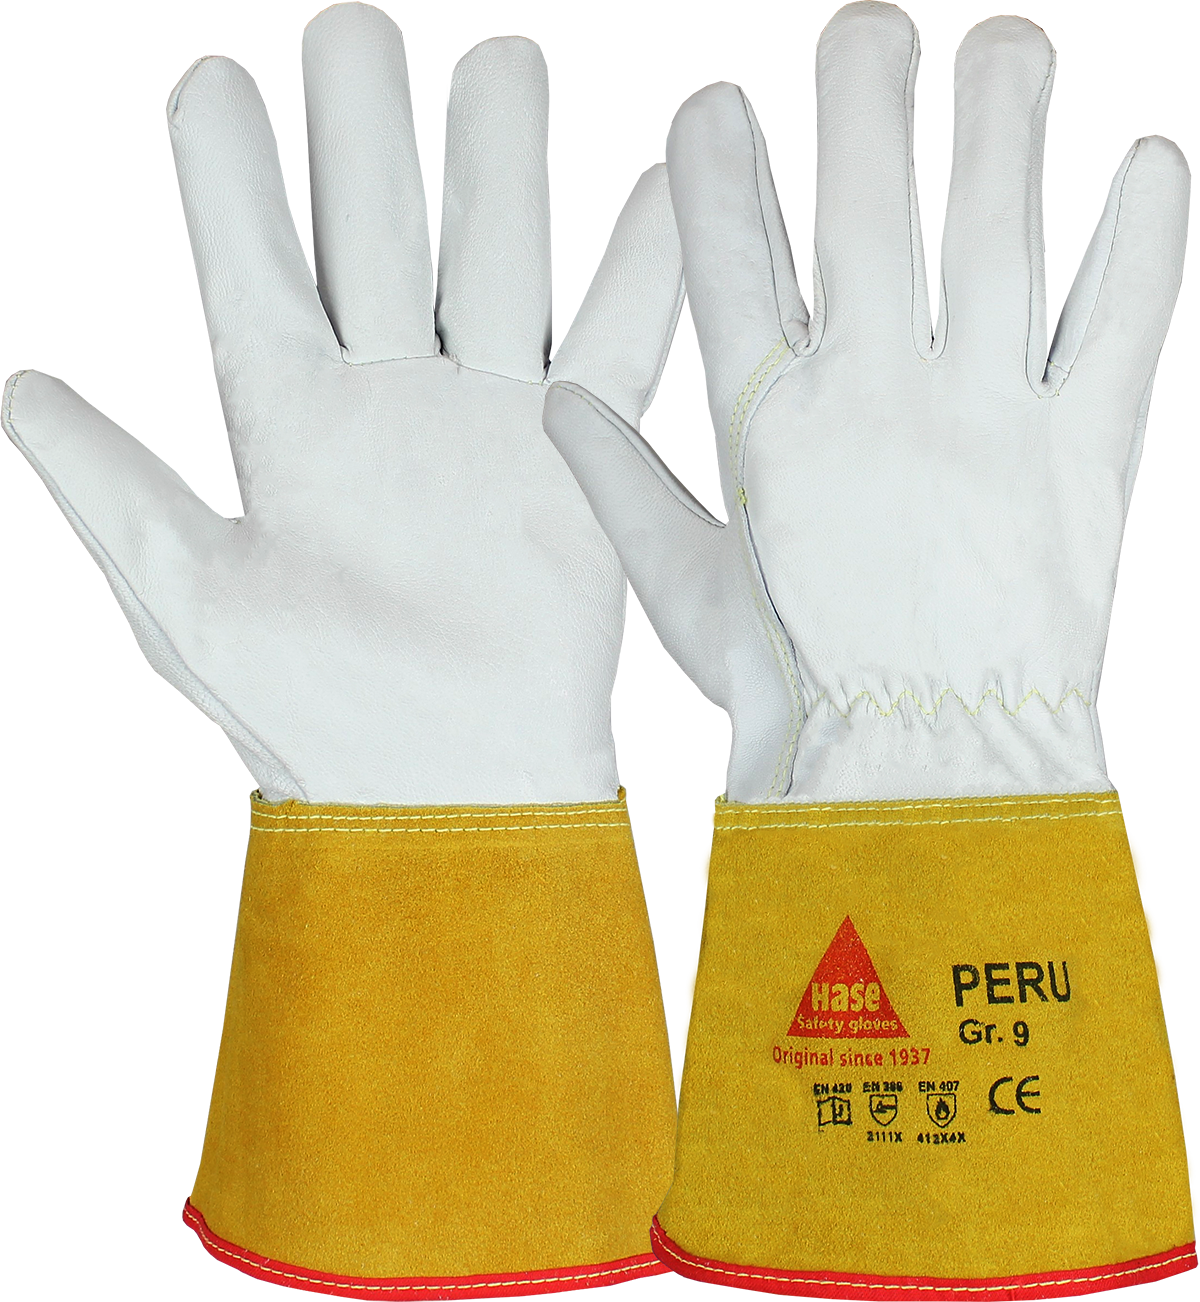 Hase Peru, Ziegennappa-Schweißerhandschuh mit Spaltlederstulpe